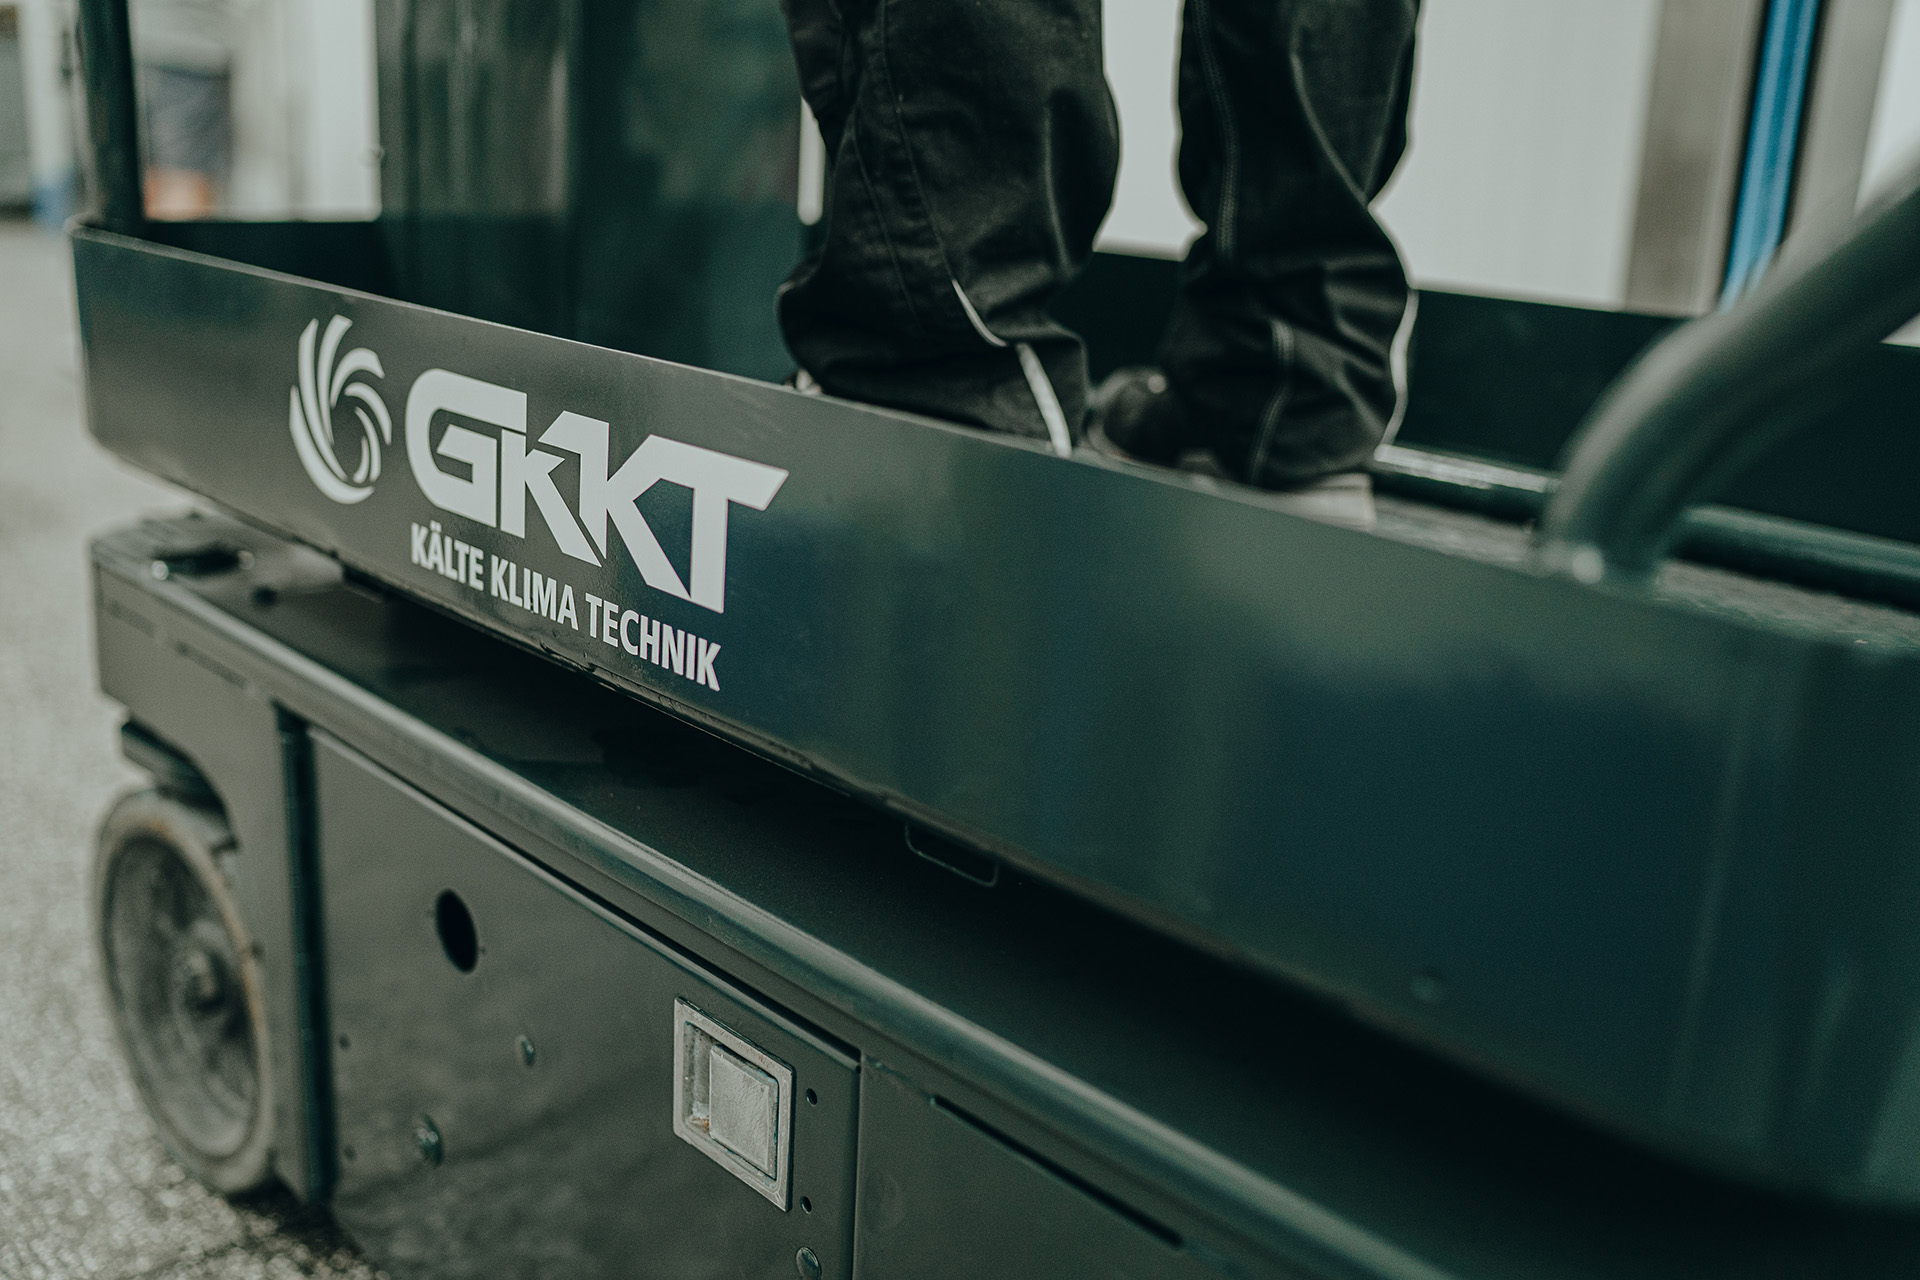 Bildausschnitt eines Personenlifts mit Logo GKKT